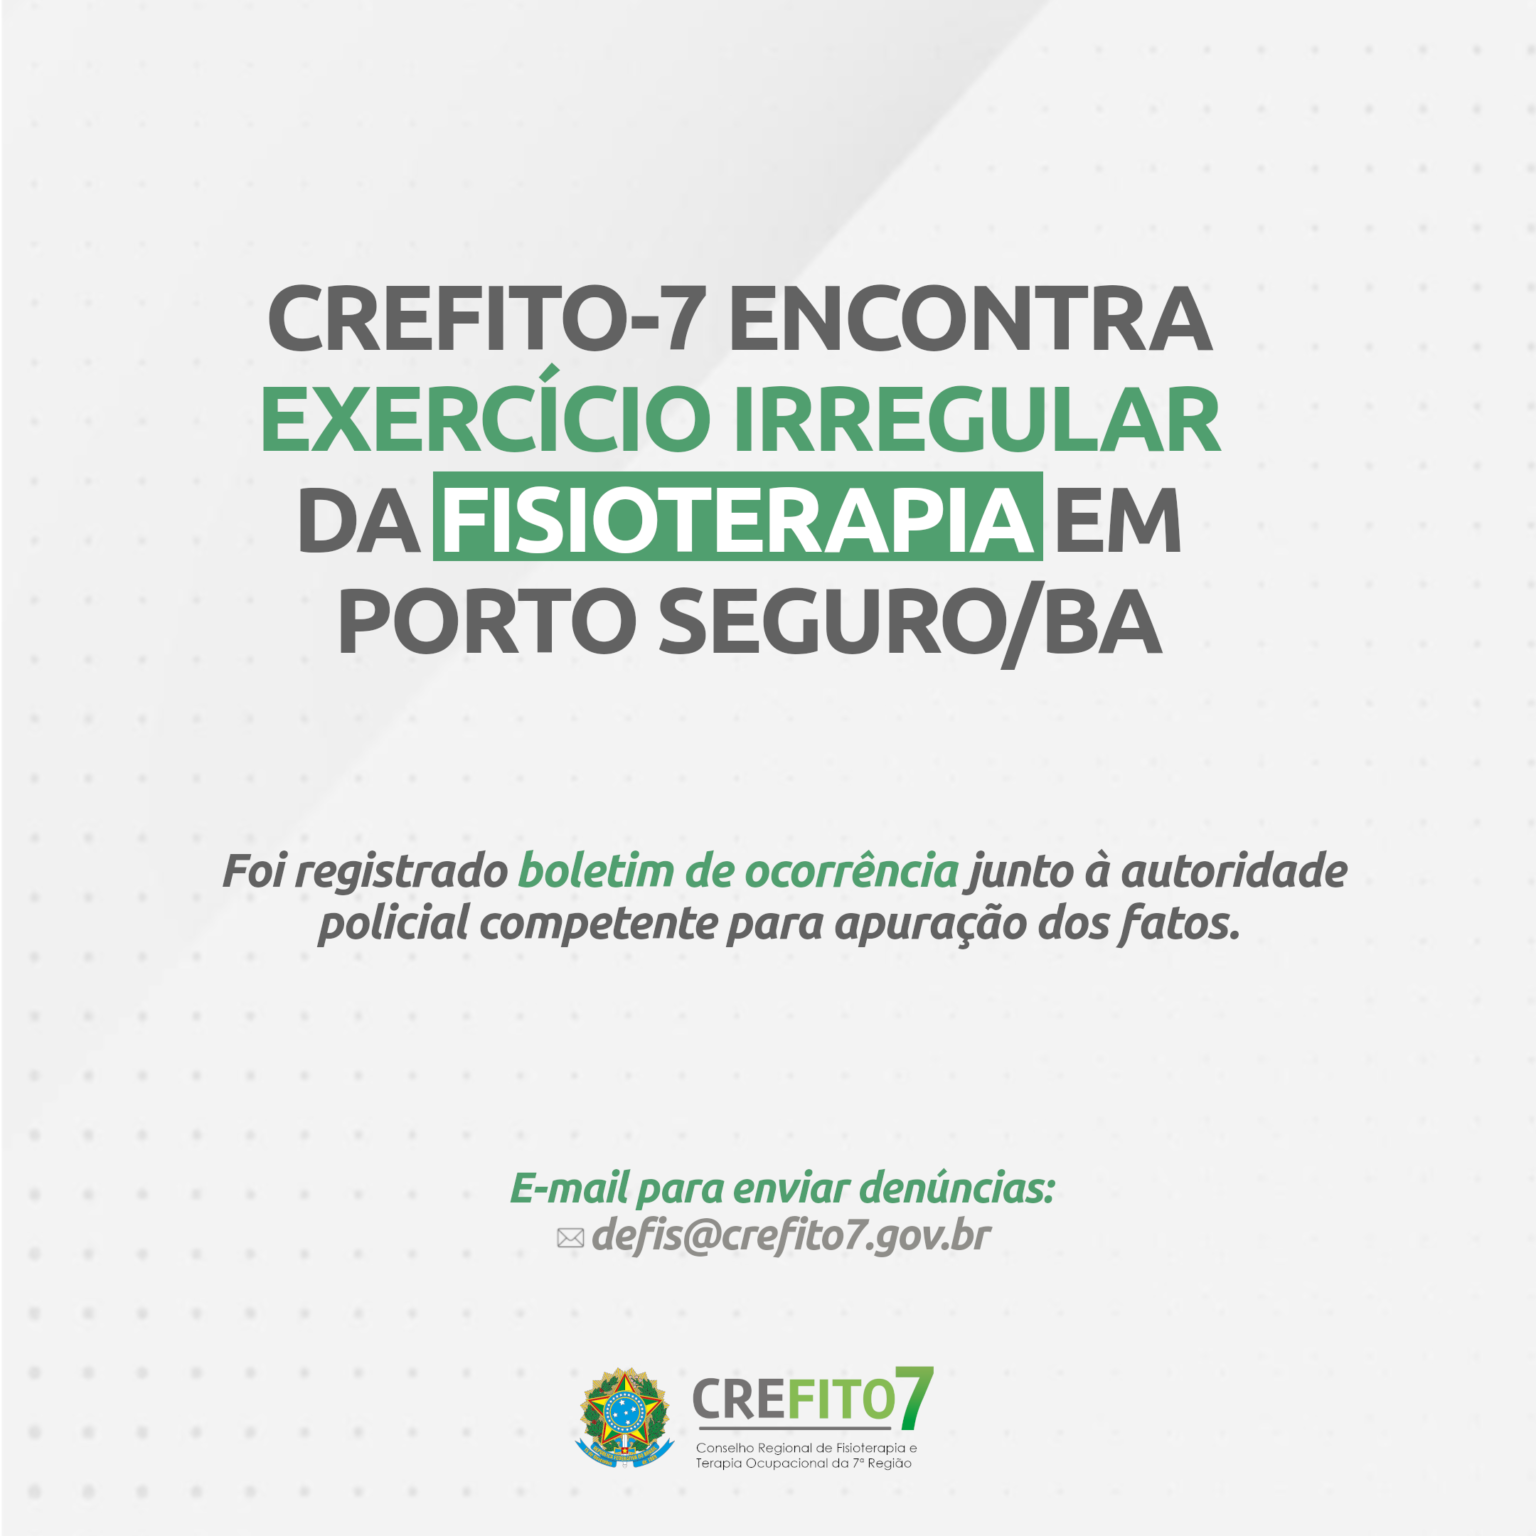 CREFITO-7 encontra exercício irregular da Fisioterapia em Porto Seguro